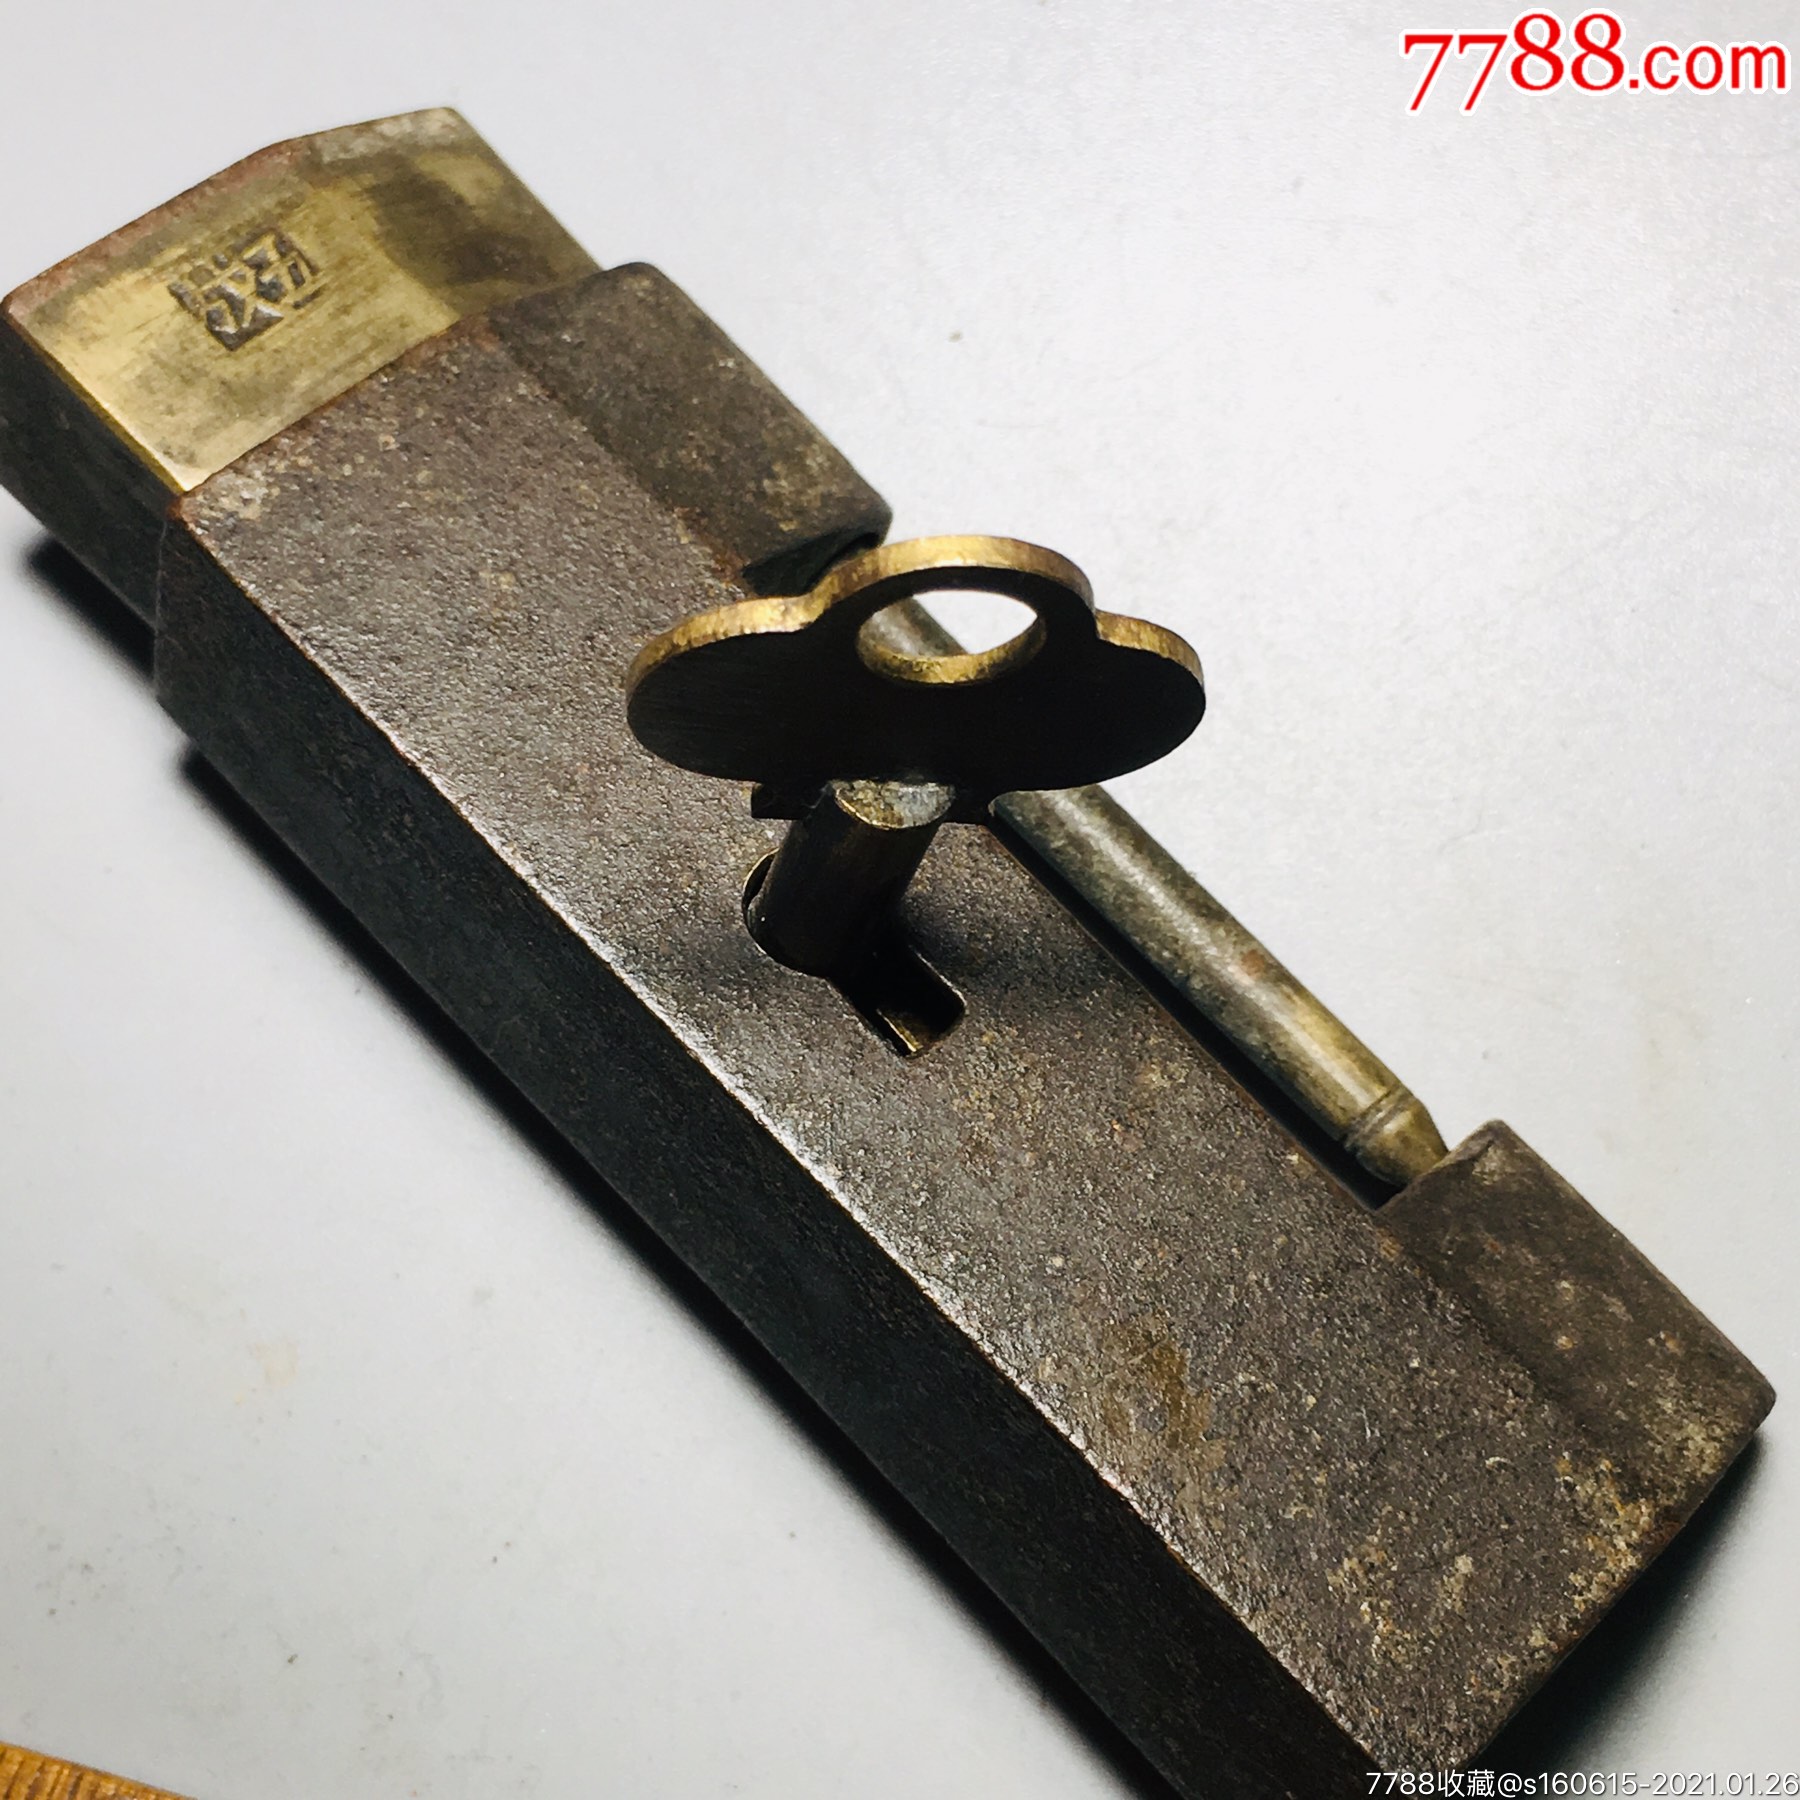 图案漂亮的老铜锁-价格:100.0000元-au23968112-铜锁/铜钥匙 -加价-7788收藏__收藏热线